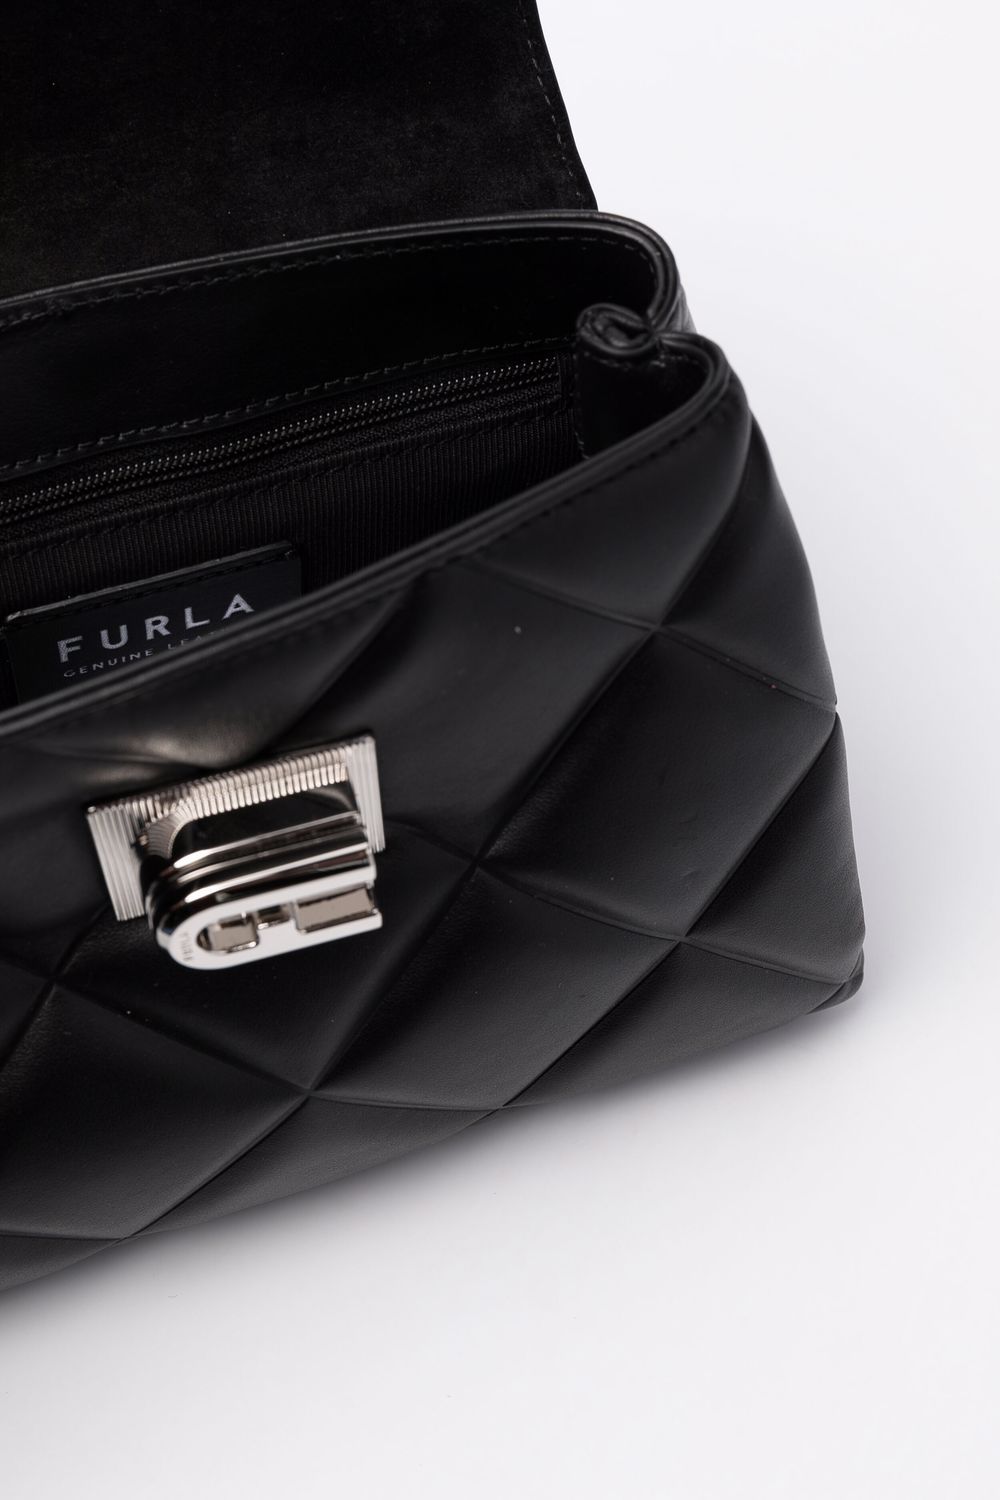 фото Furla стеганая сумка на плечо размера мини